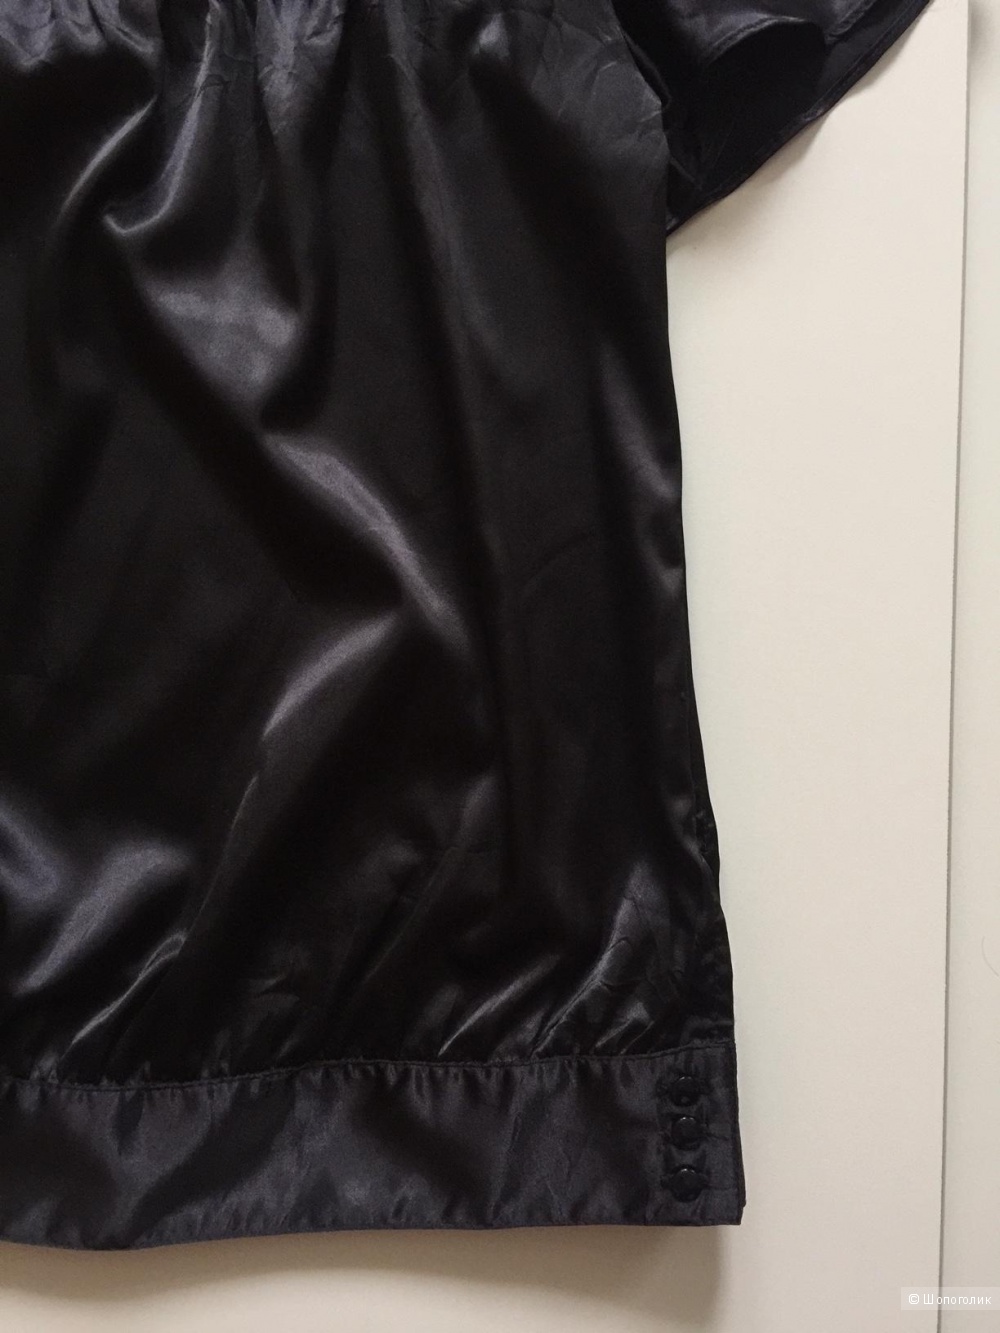 Черная атласная блузка с коротким рукавом и бантом марки TRF размер 40-42